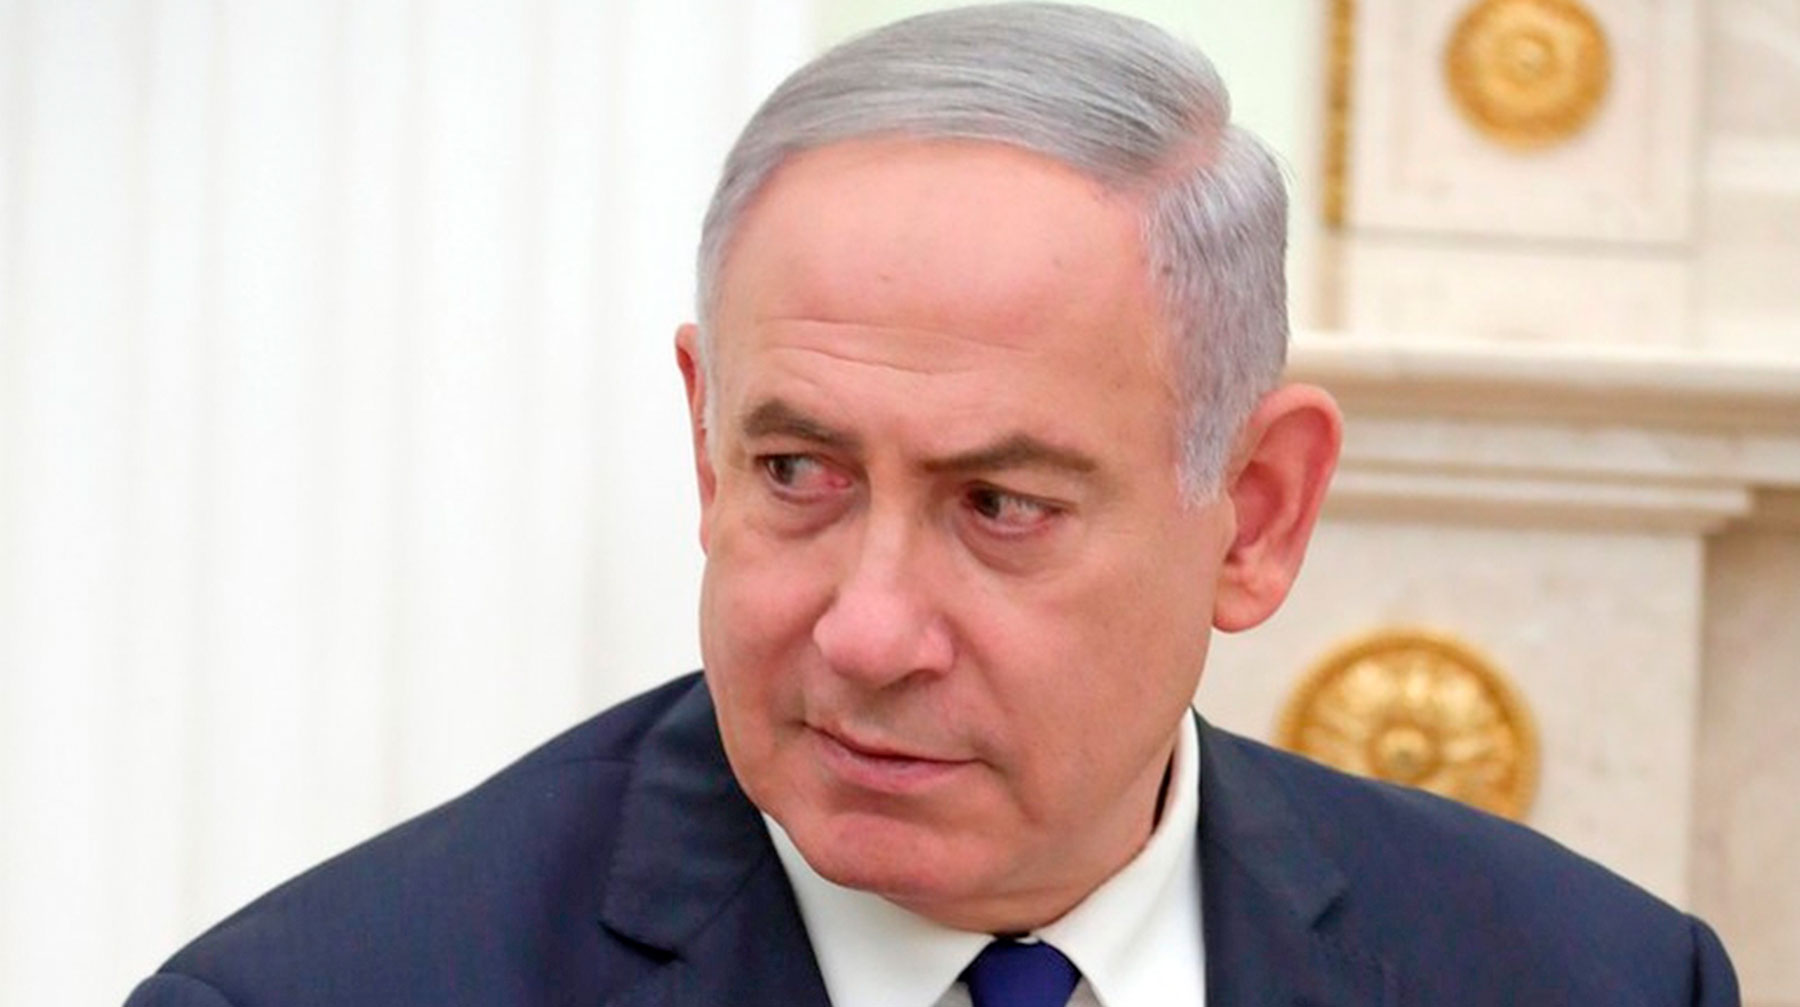 Возбуждение уголовного дела может сильно повлиять на следующие выборы премьер-министра Премьер-министр Израиля Биньямин Нетаньяху